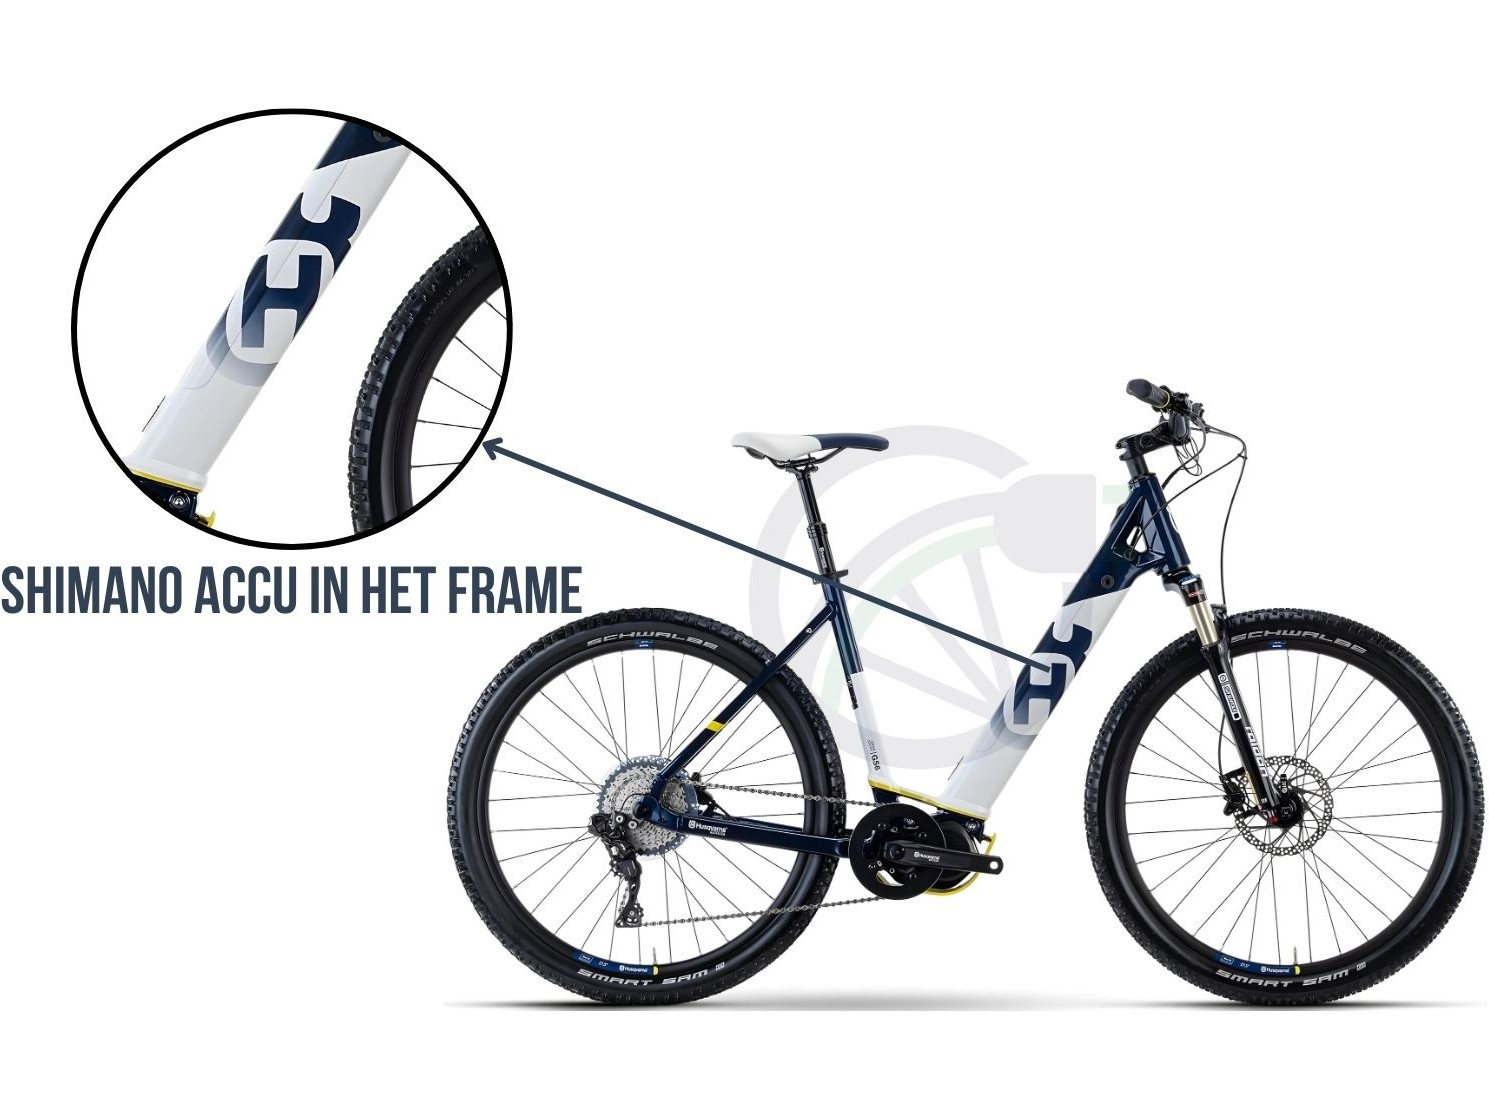 Fiets met uitgelicht waar op de fiets (in dit geval in het frame), de accu geplaatst dient te worden. Daarnaast is er beschreven welke Shimano accu er op deze fiets geplaatst kan worden.